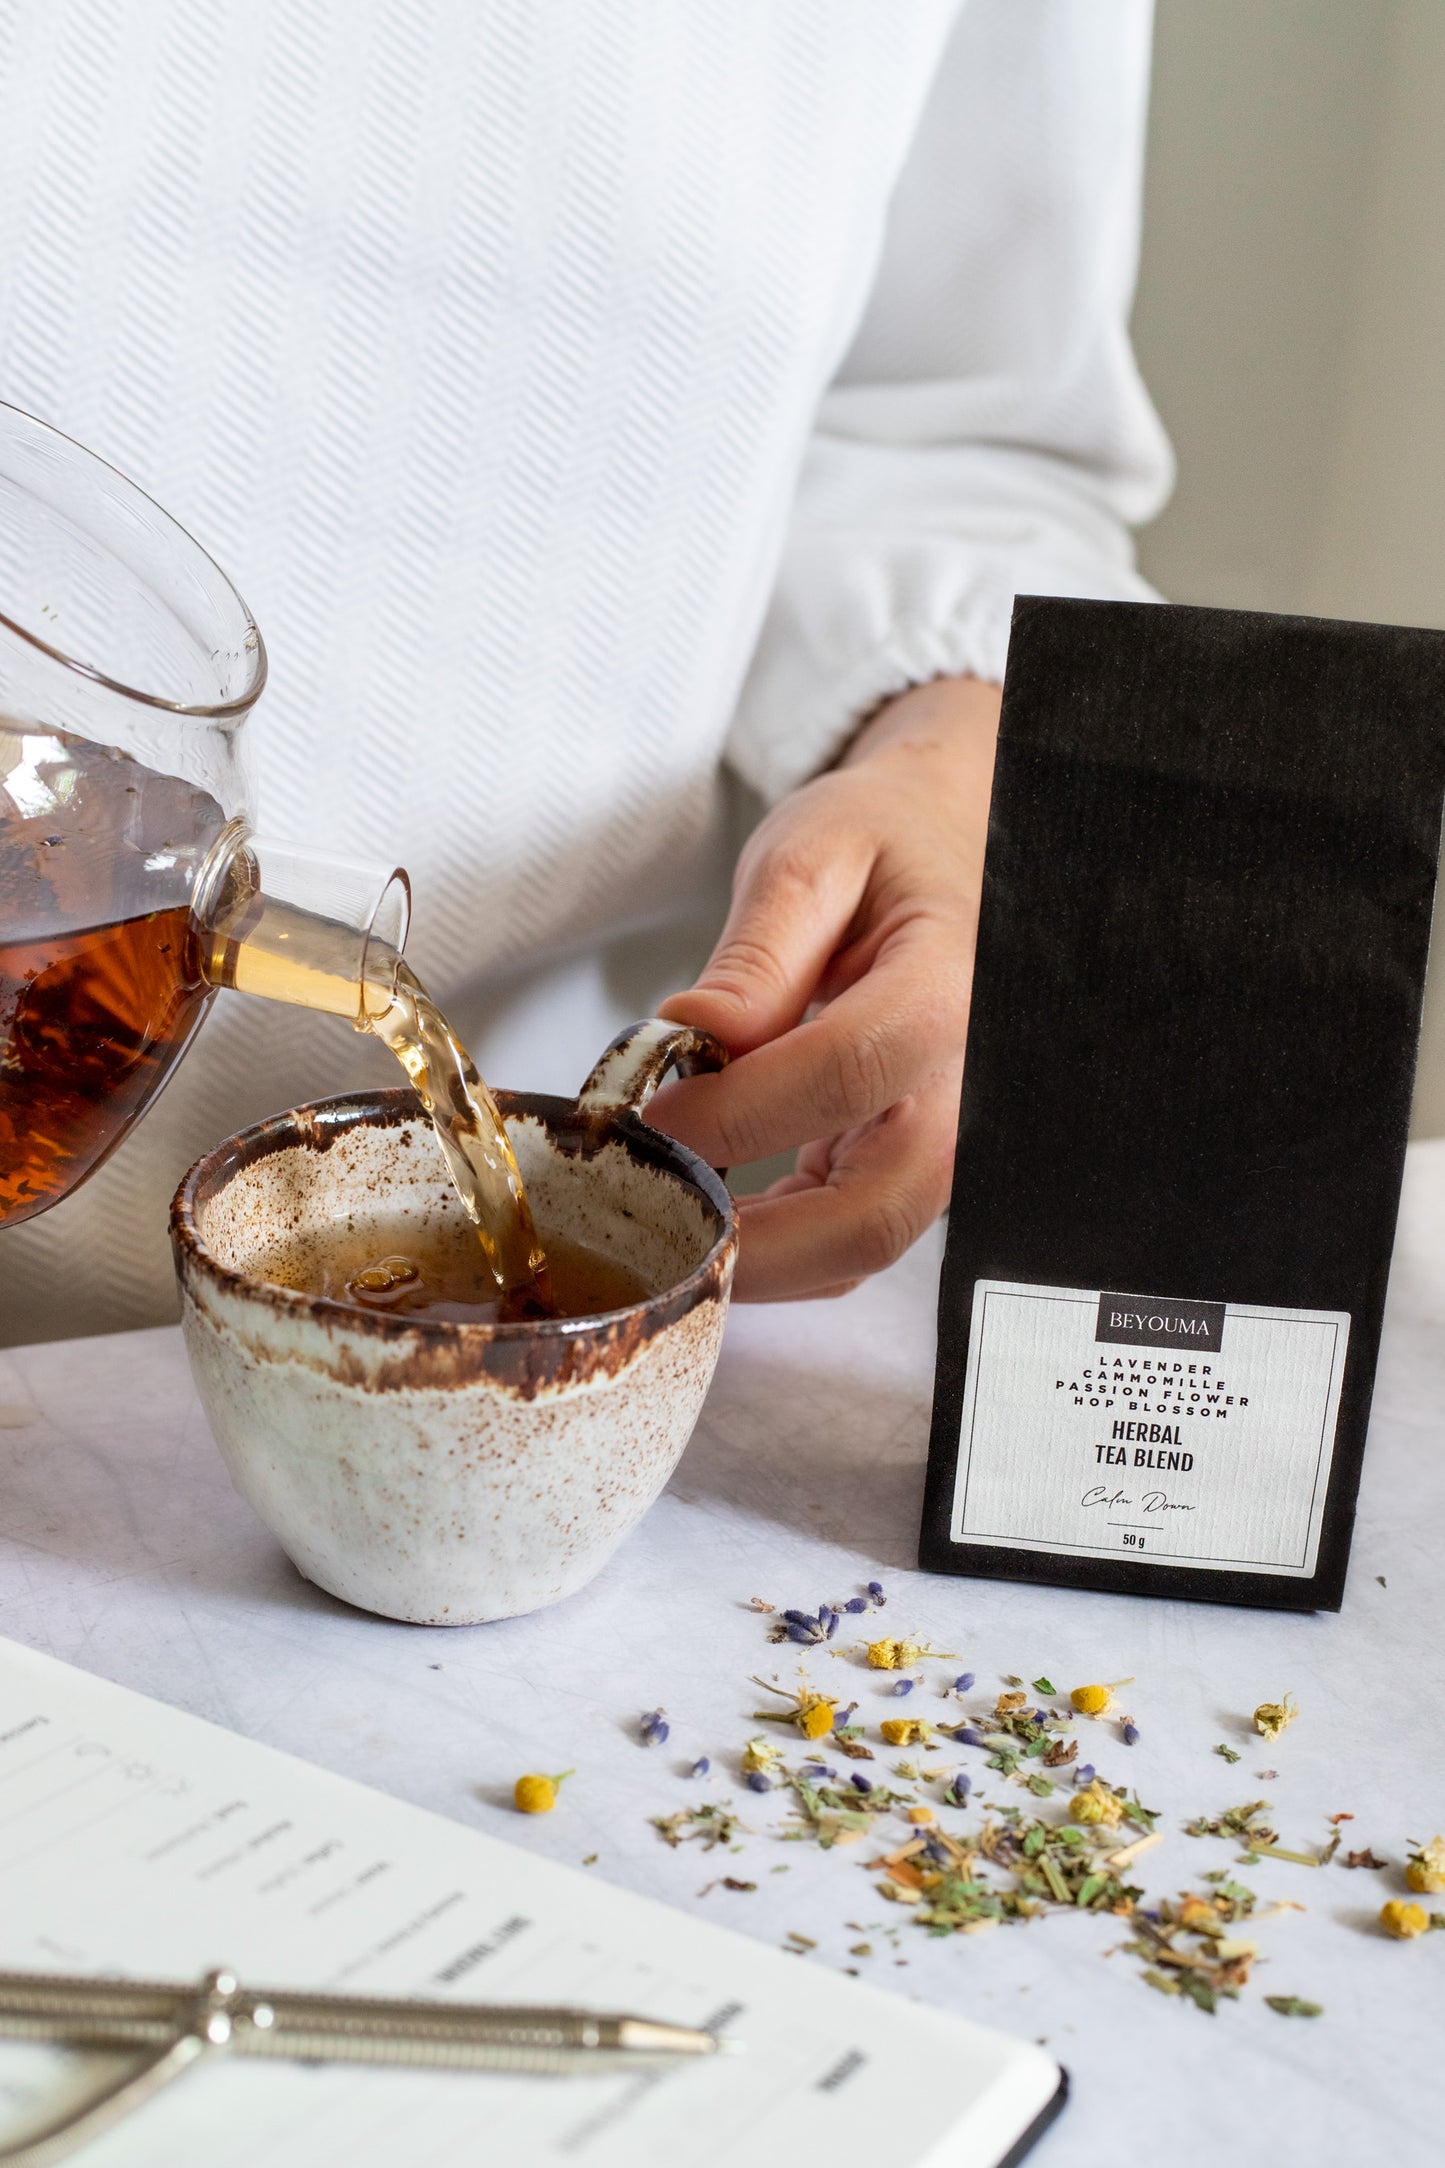 BEYOUMA herbal tea blend «Calm Down»